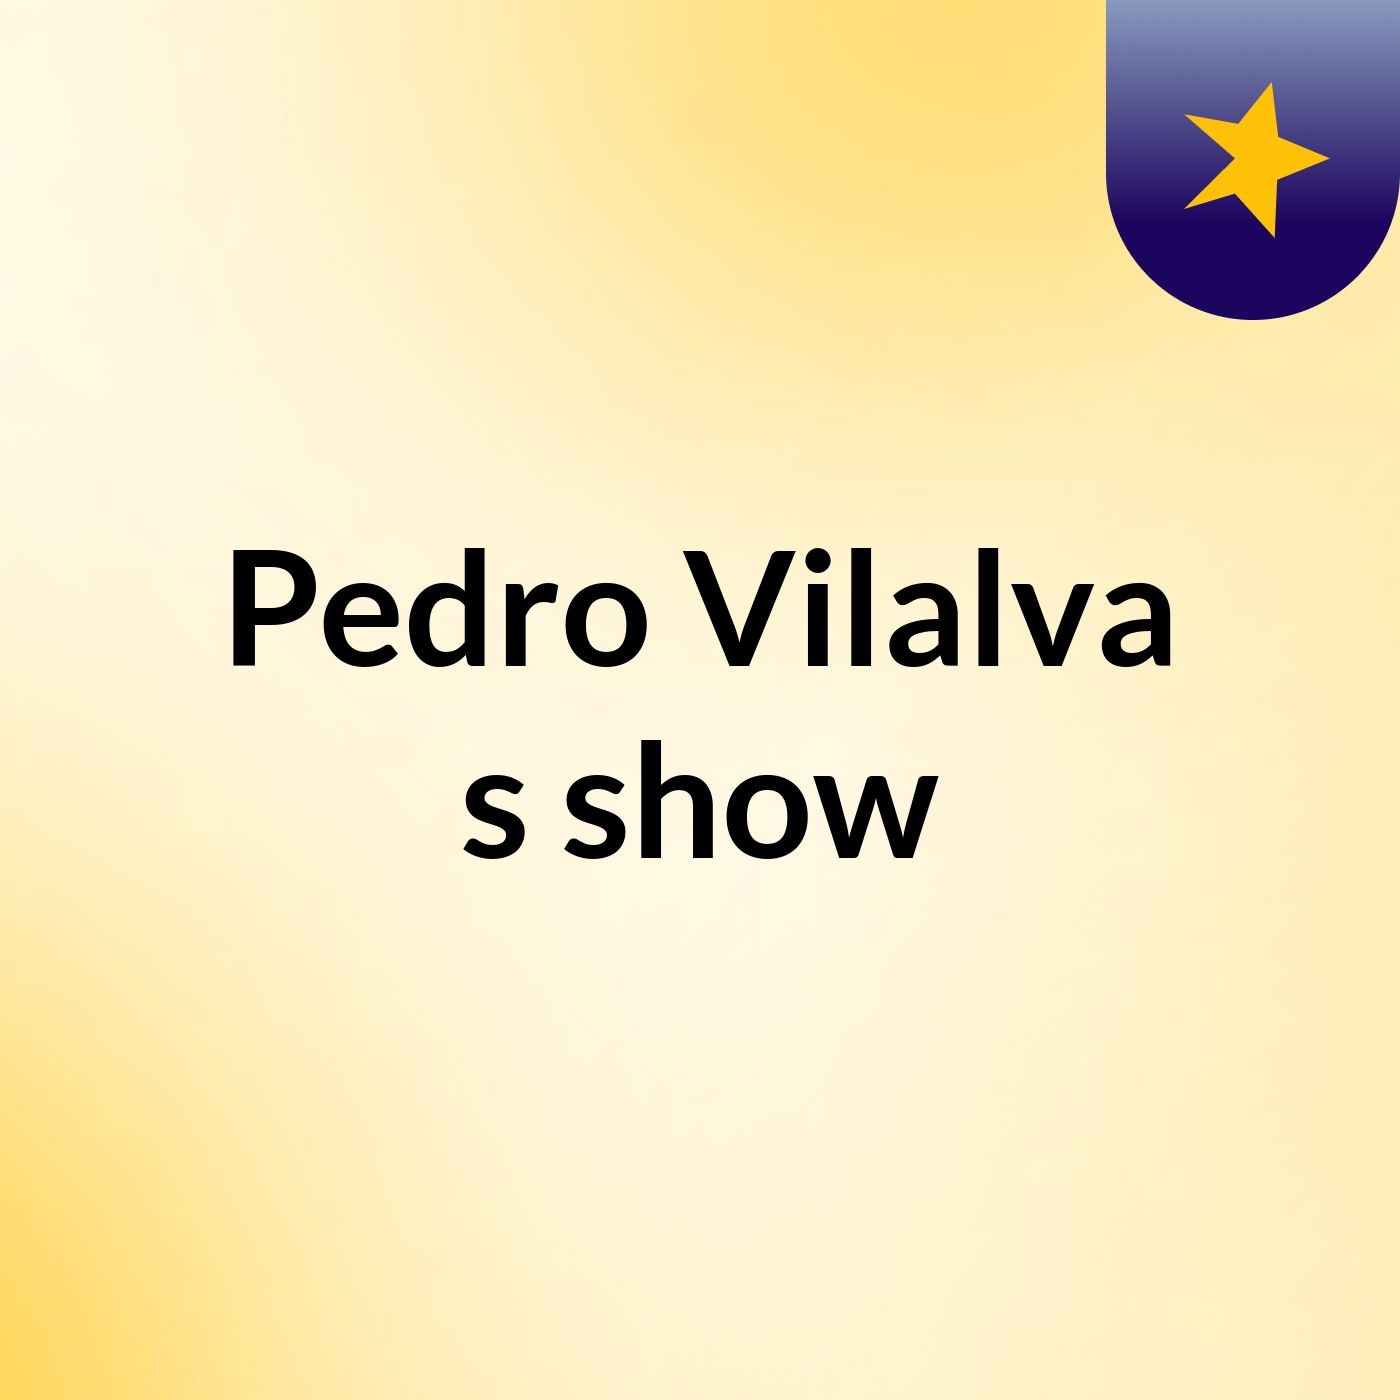 Pedro Vilalva's show